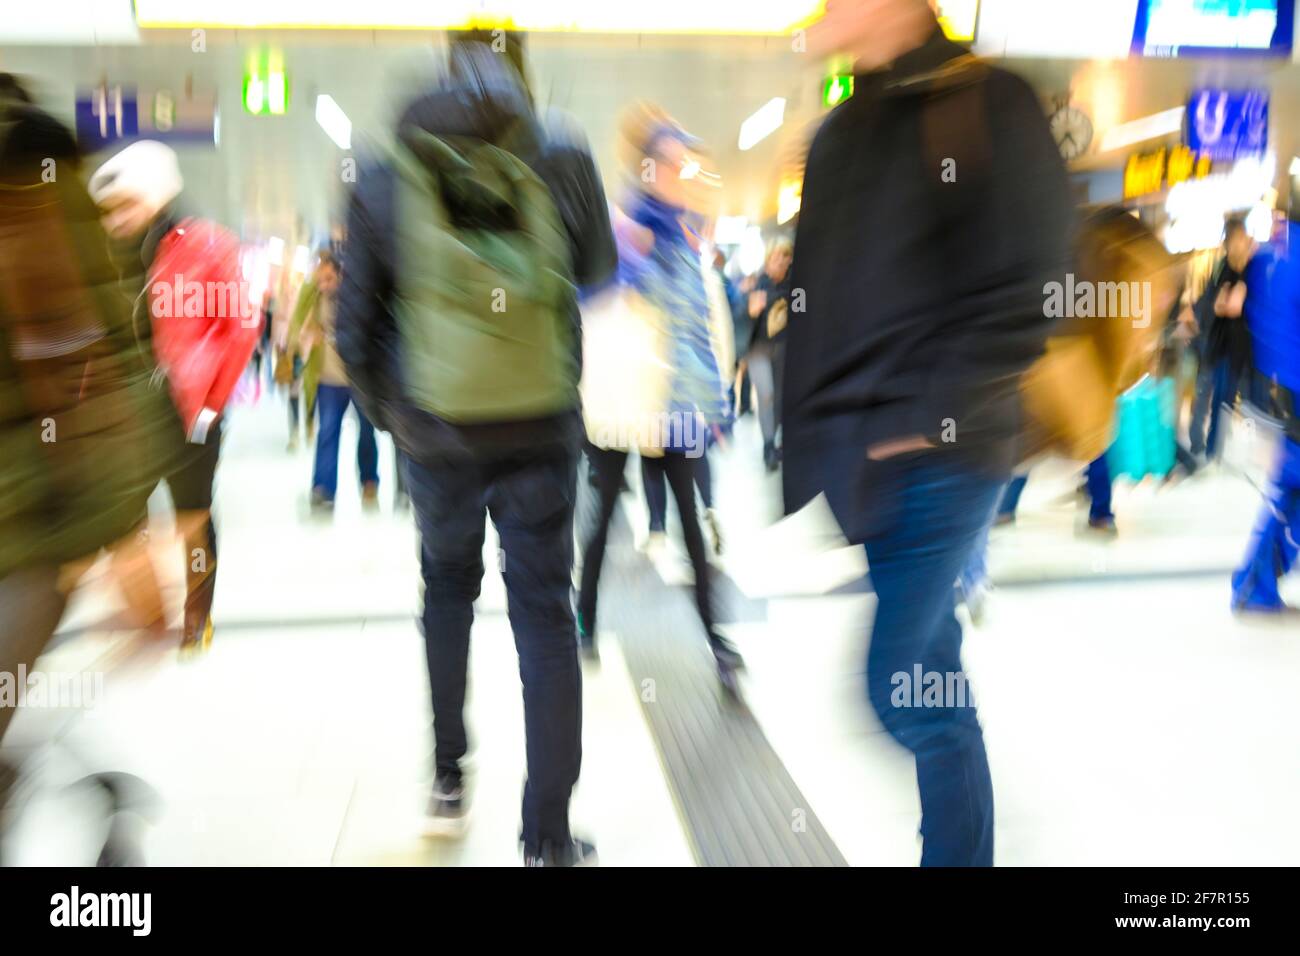 19.01.2019, Duesseldorf, Nordrhein-Westfalen, Deutschland - Menschen im Duesseldorfer Hauptbahnhof Foto Stock